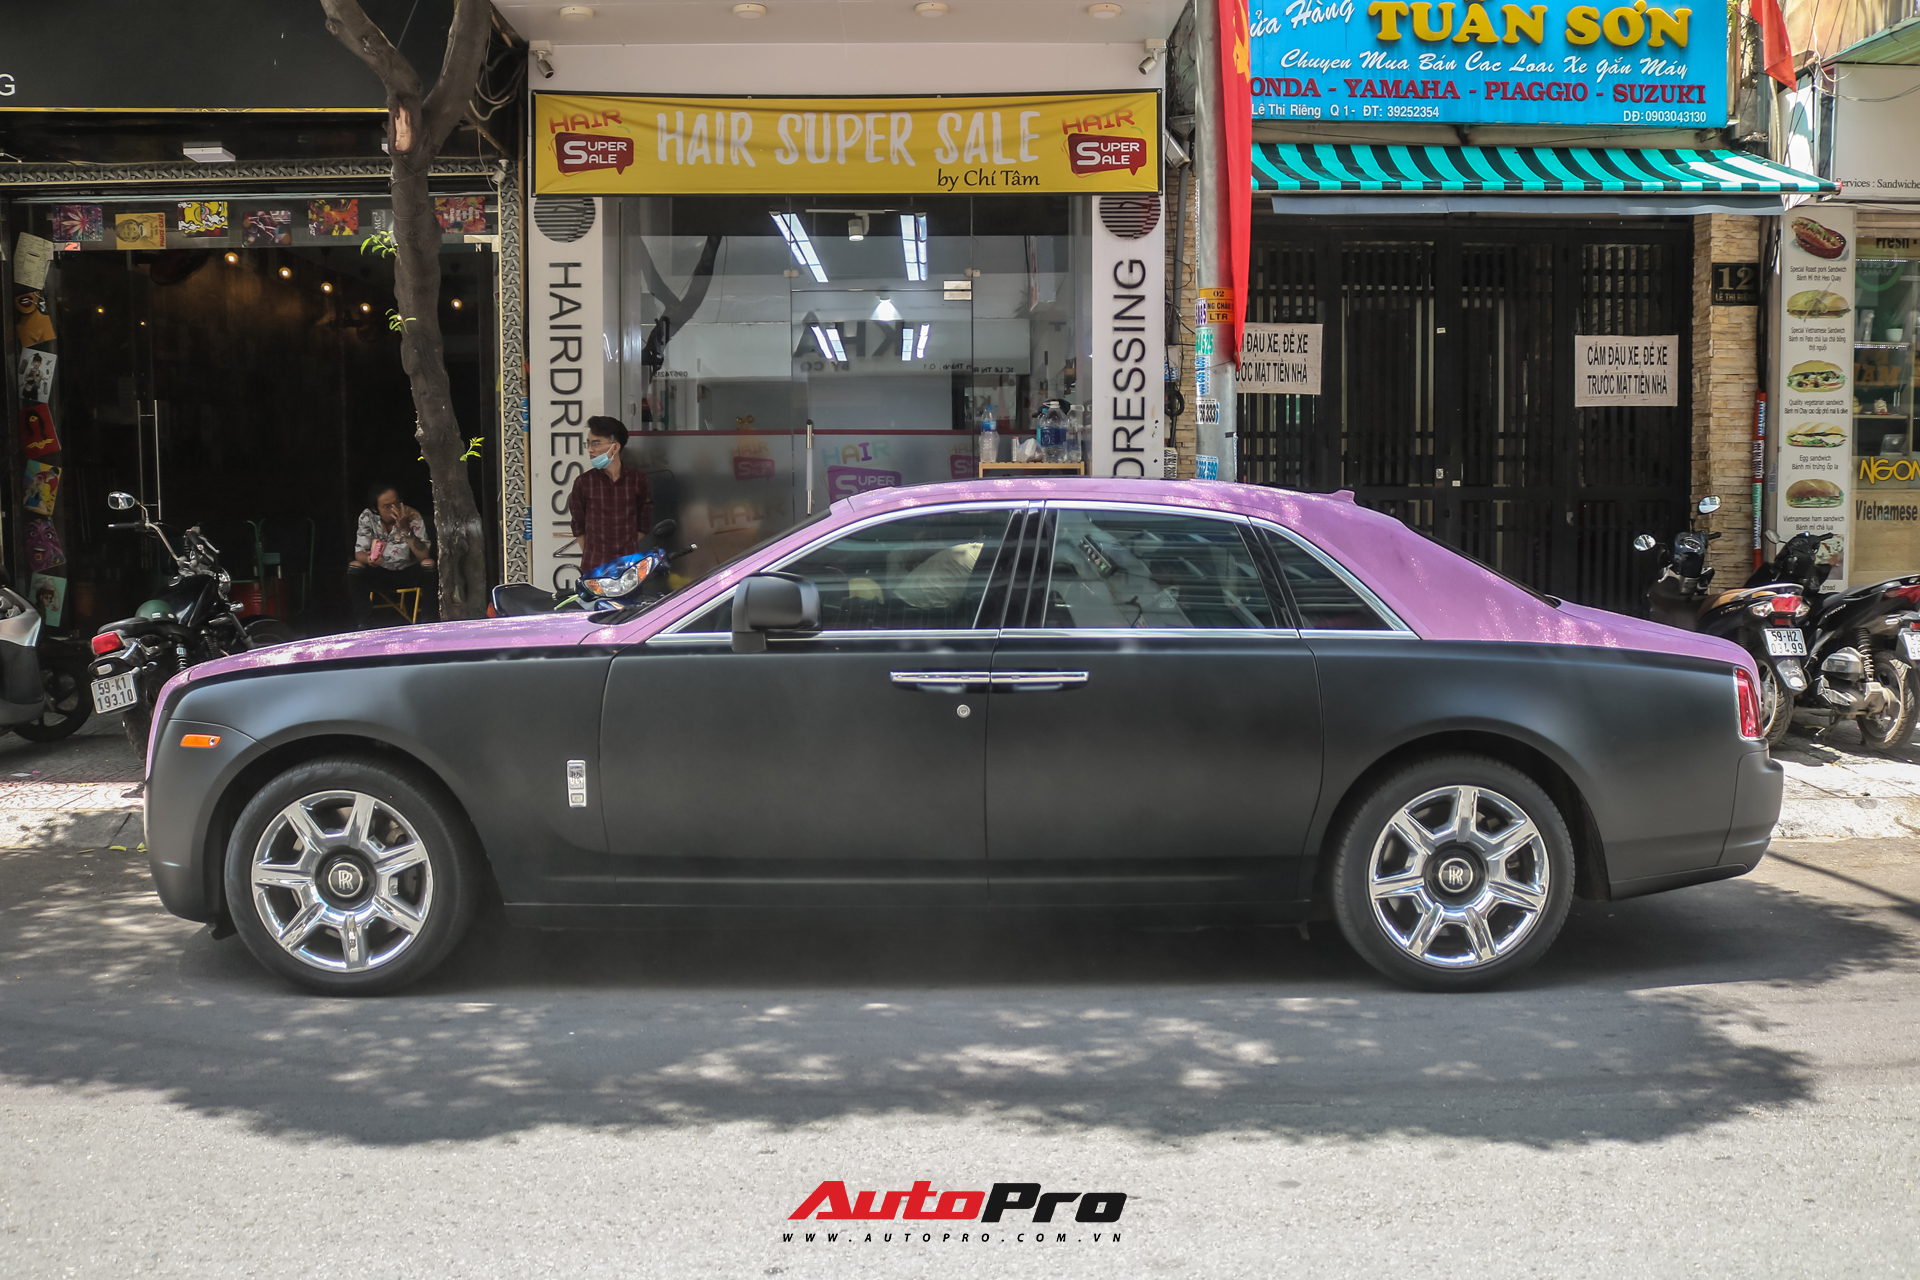 Mặc kệ drama, Ngọc Trinh mang Rolls-Royce Ghost bản Black Pink siêu độc lên phố chơi cuối tuần - Ảnh 7.